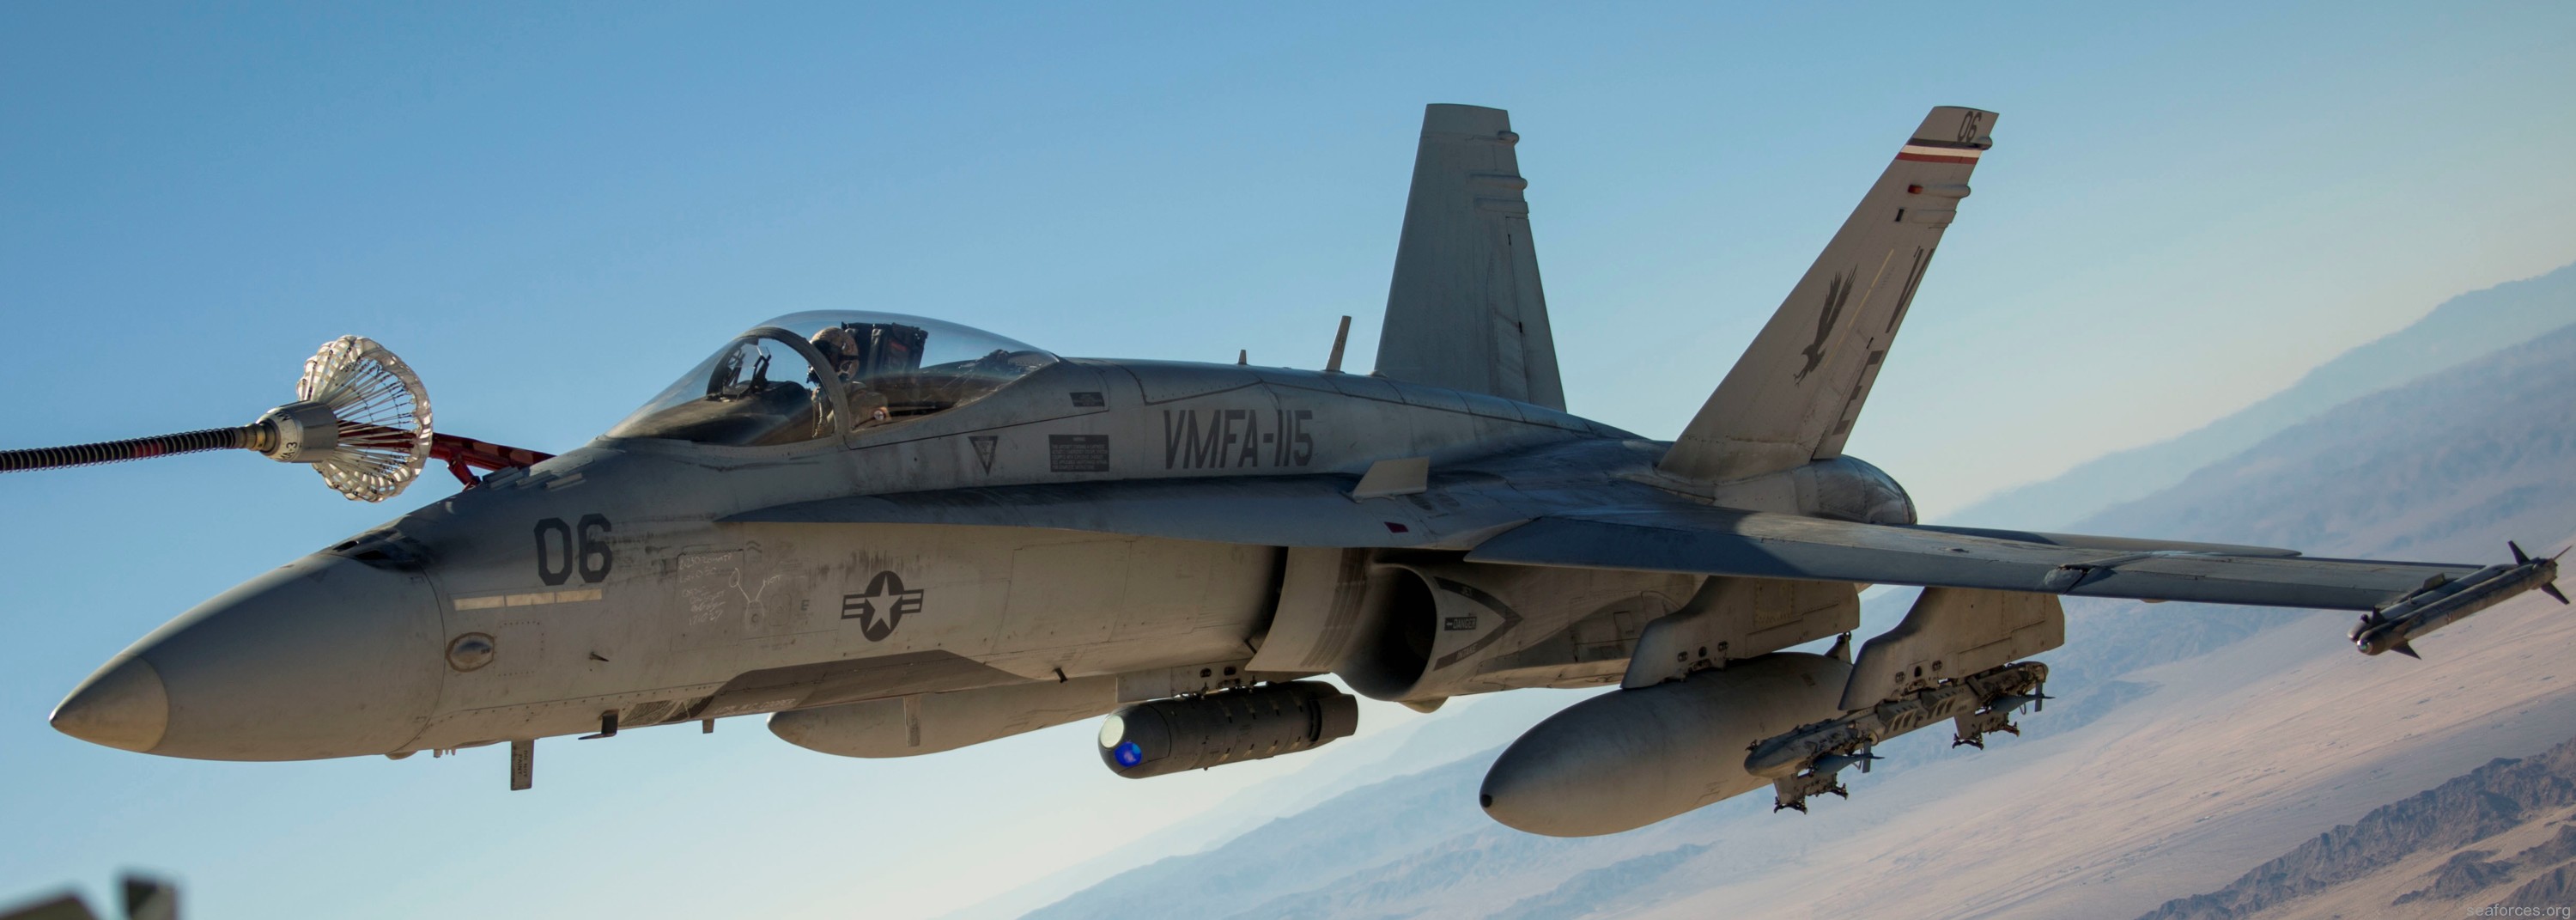 vmfa-115 silver eagles marine fighter attack squadron f/a-18a+ hornet 89